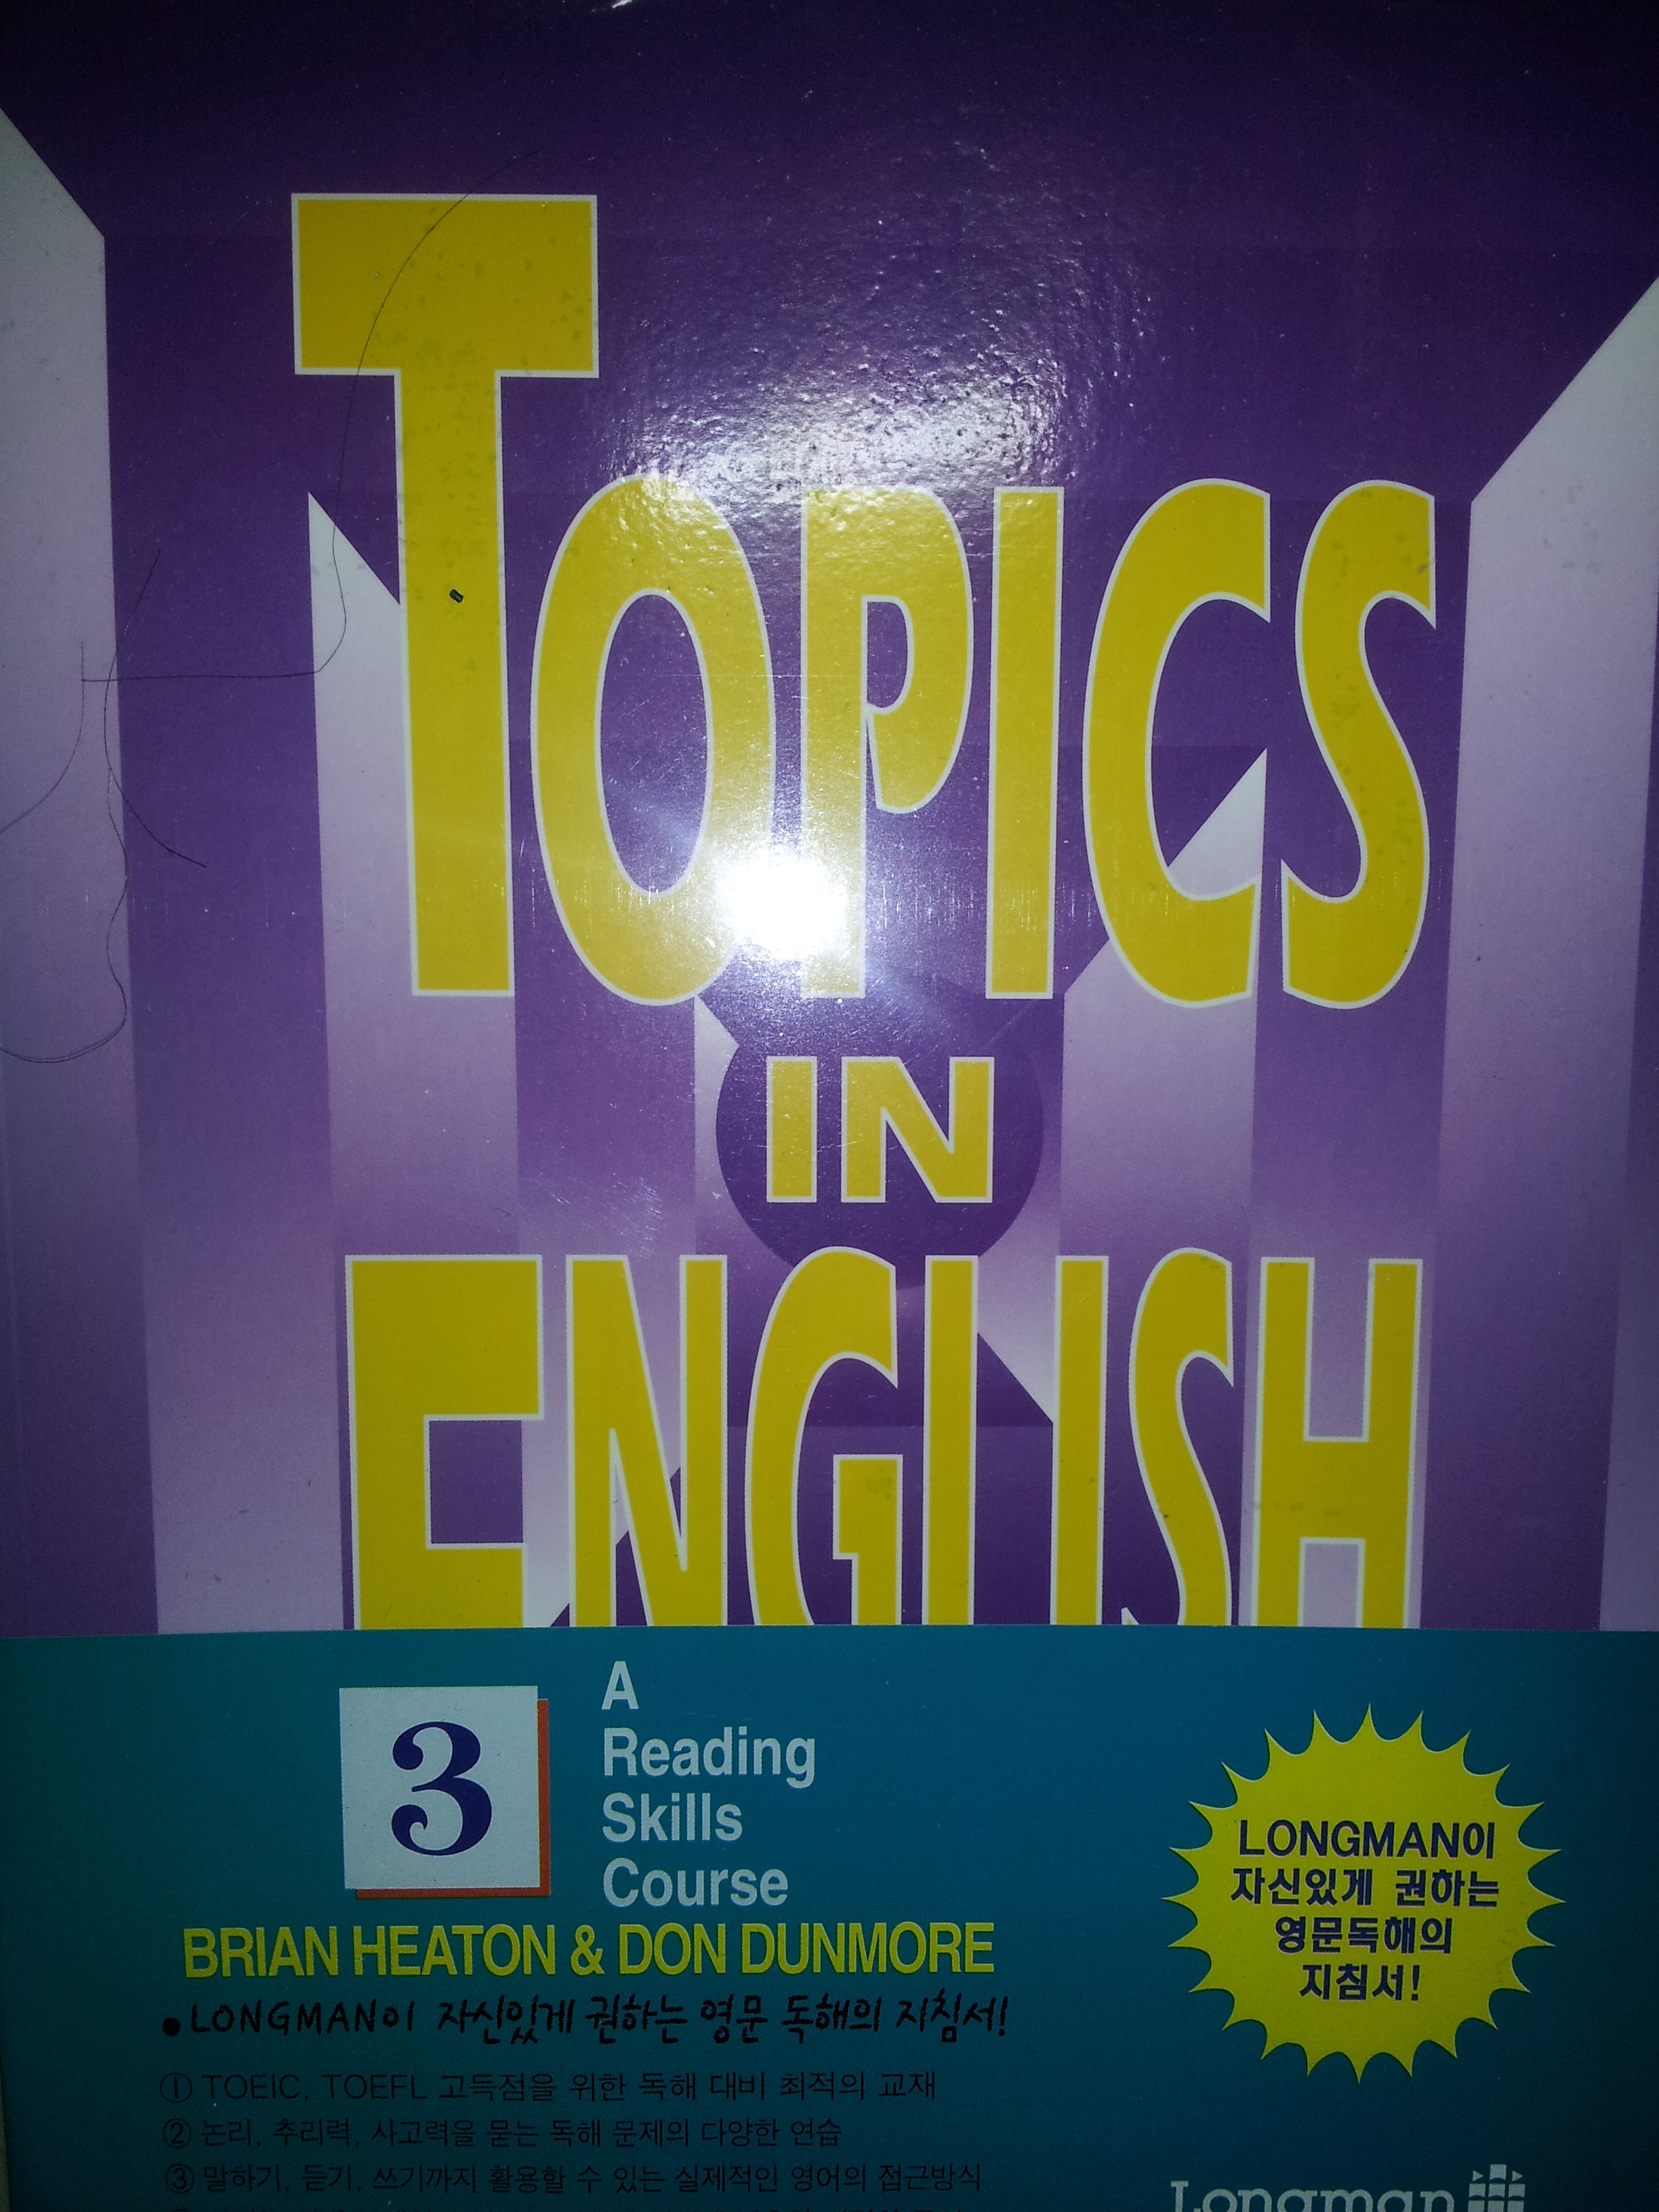 Topics in English